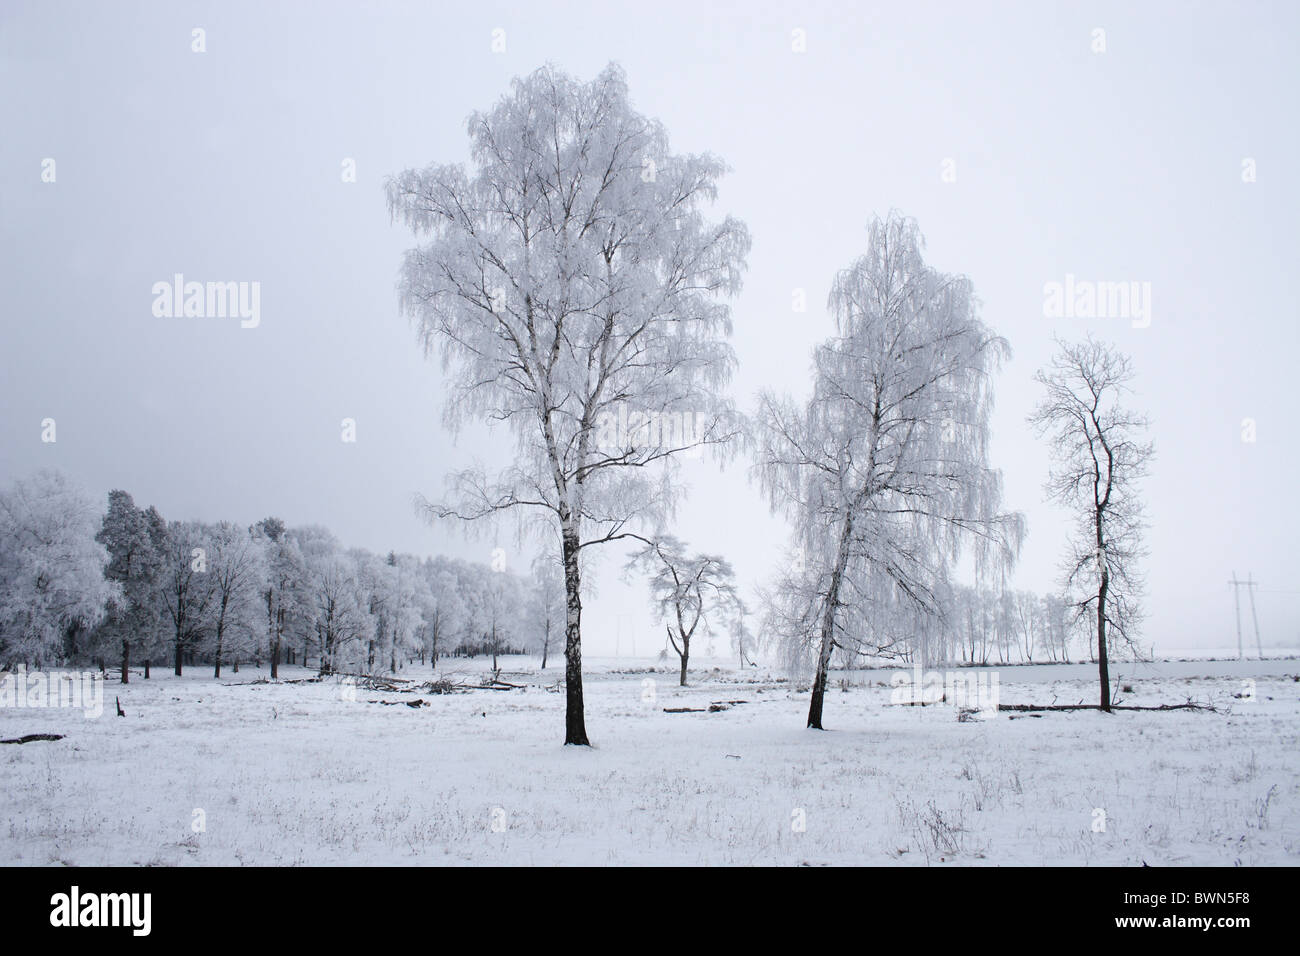 La Russia Snegiri Regione di Mosca viaggio viaggio Europa Tree gelo della neve in inverno freddo bianco congelati brina freddo Foto Stock